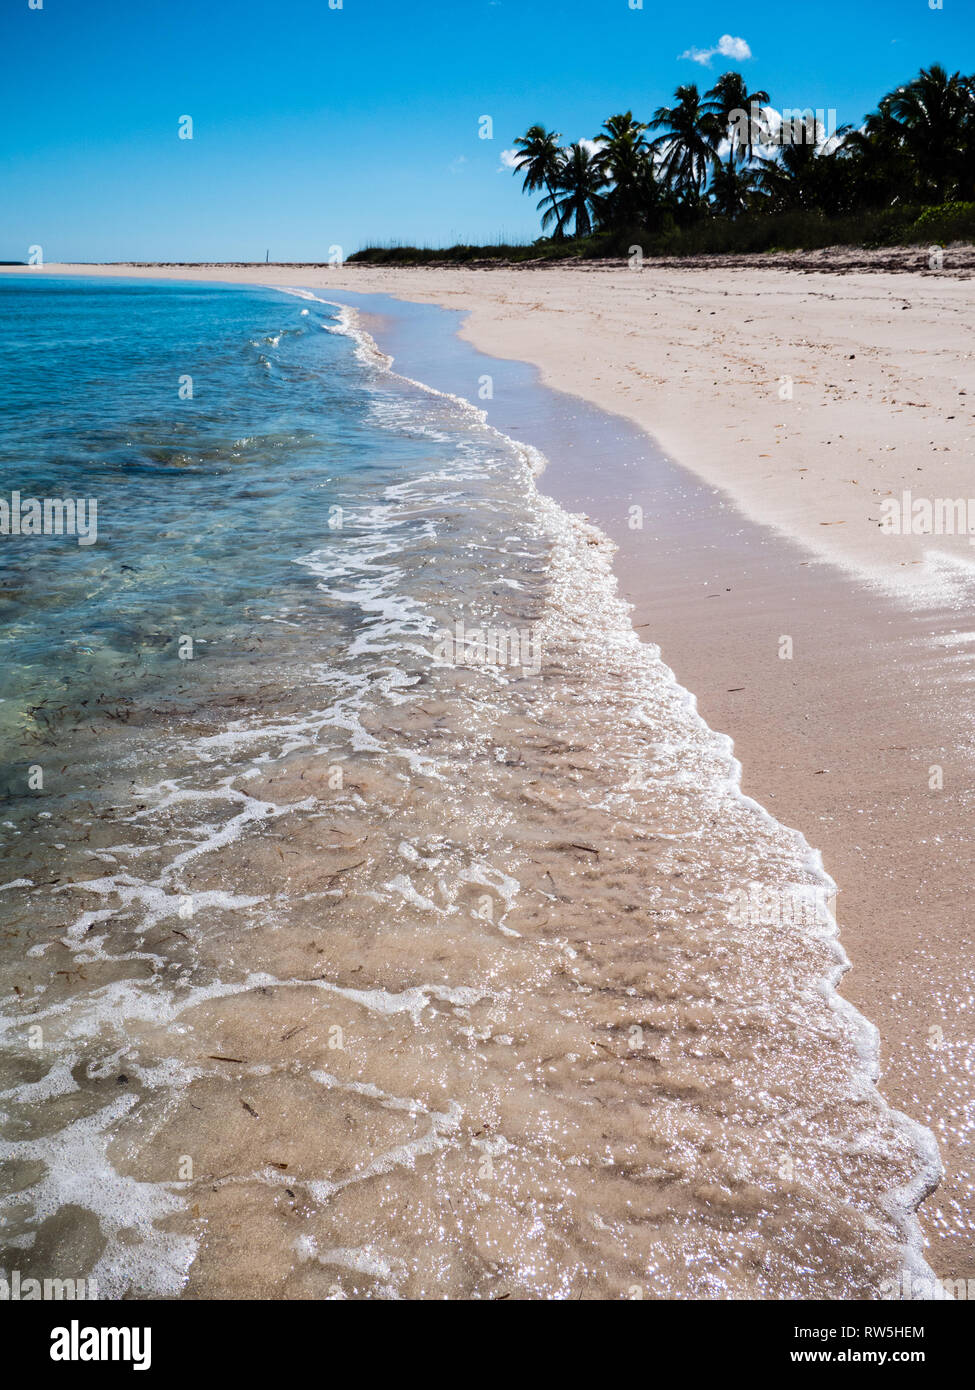 Las olas golpeando la playa tropical con palmeras, Playa calas gemelas, Eleuthera, las Bahamas, El Caribe. Foto de stock